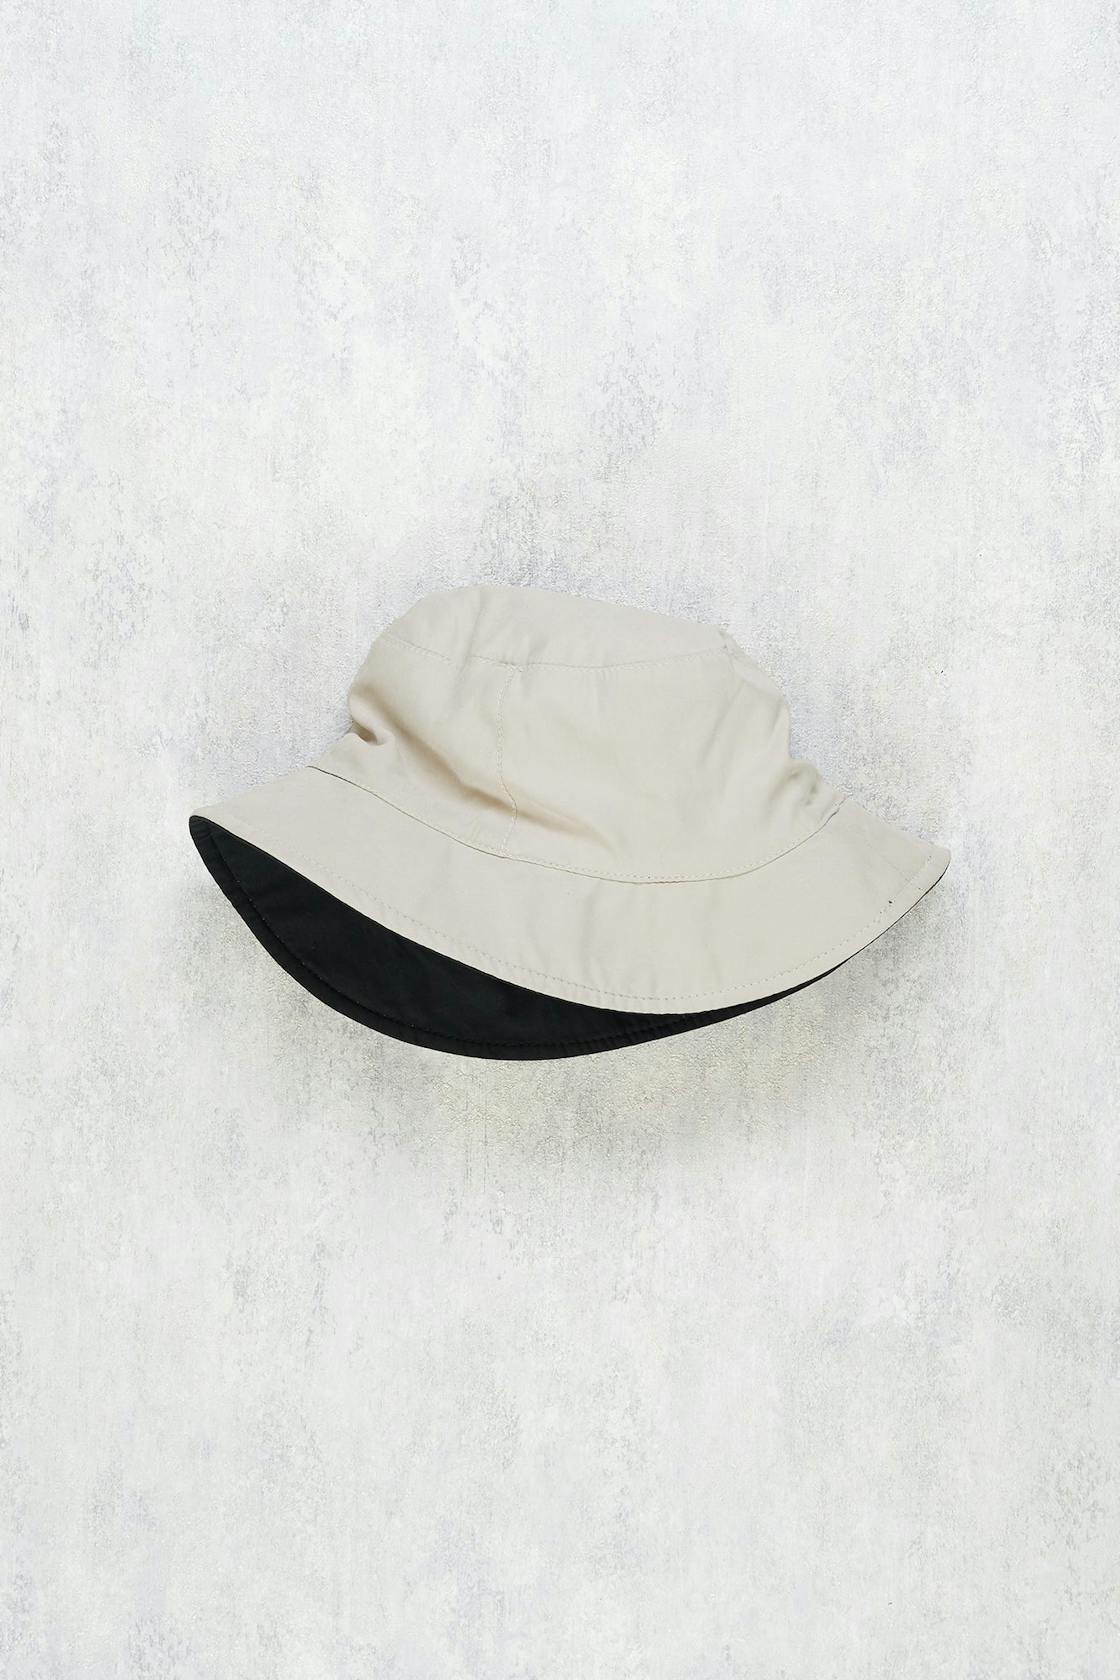 Lock & Co. Navy/Beige Reversible Water-Repellent Bucket Hat